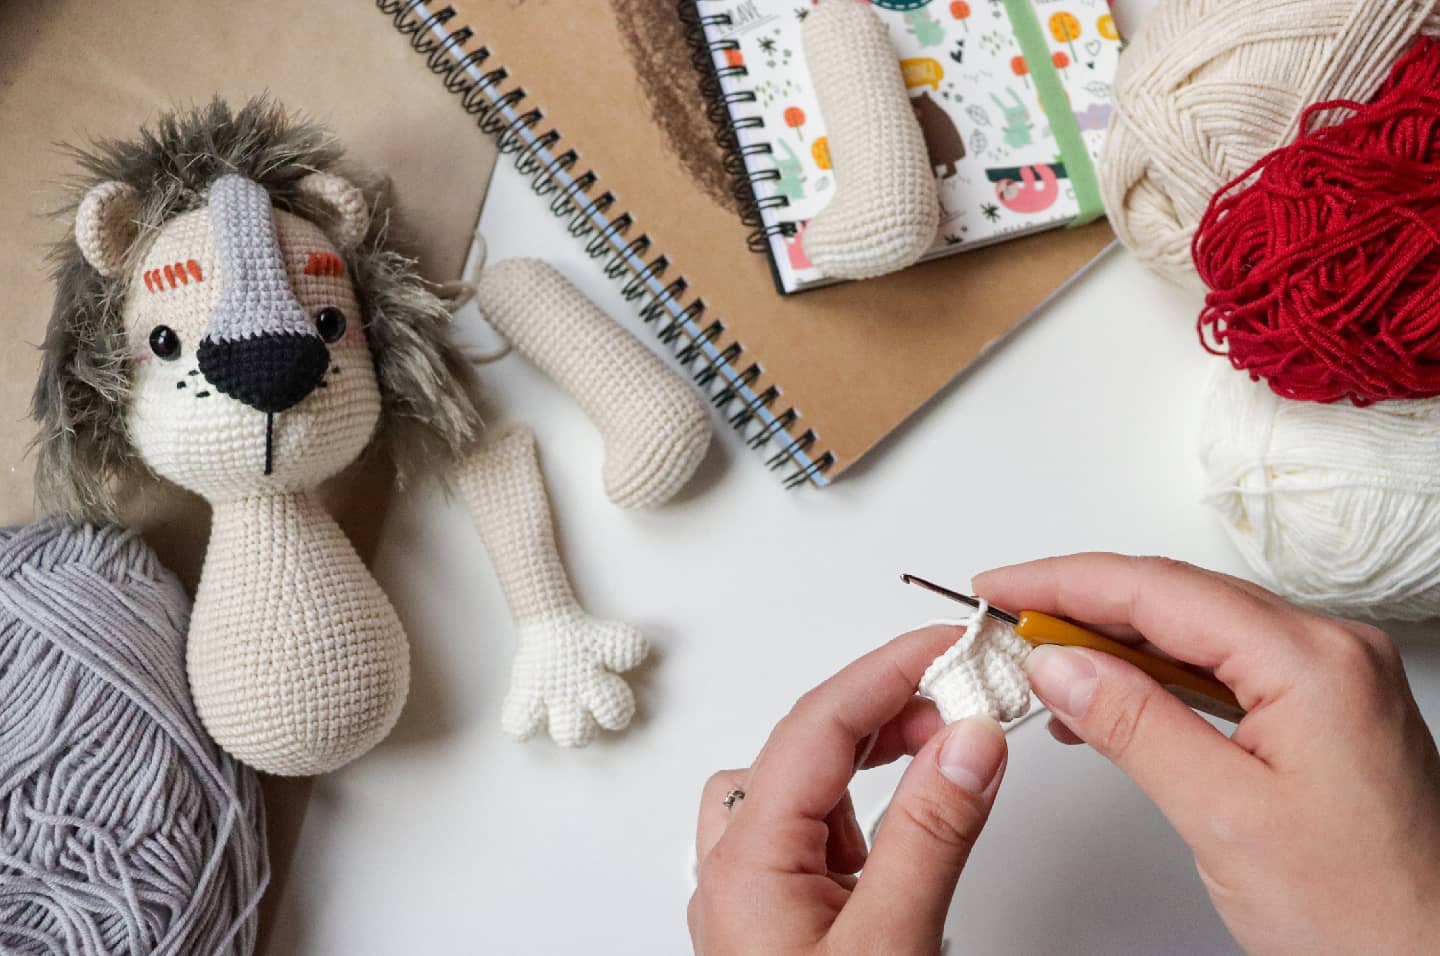 ‘Toysneed’ โครเชต์ตุ๊กตาผ้า DIY สุดน่ารัก เสริมจินตนาการ ปลูกฝังการรักสัตว์